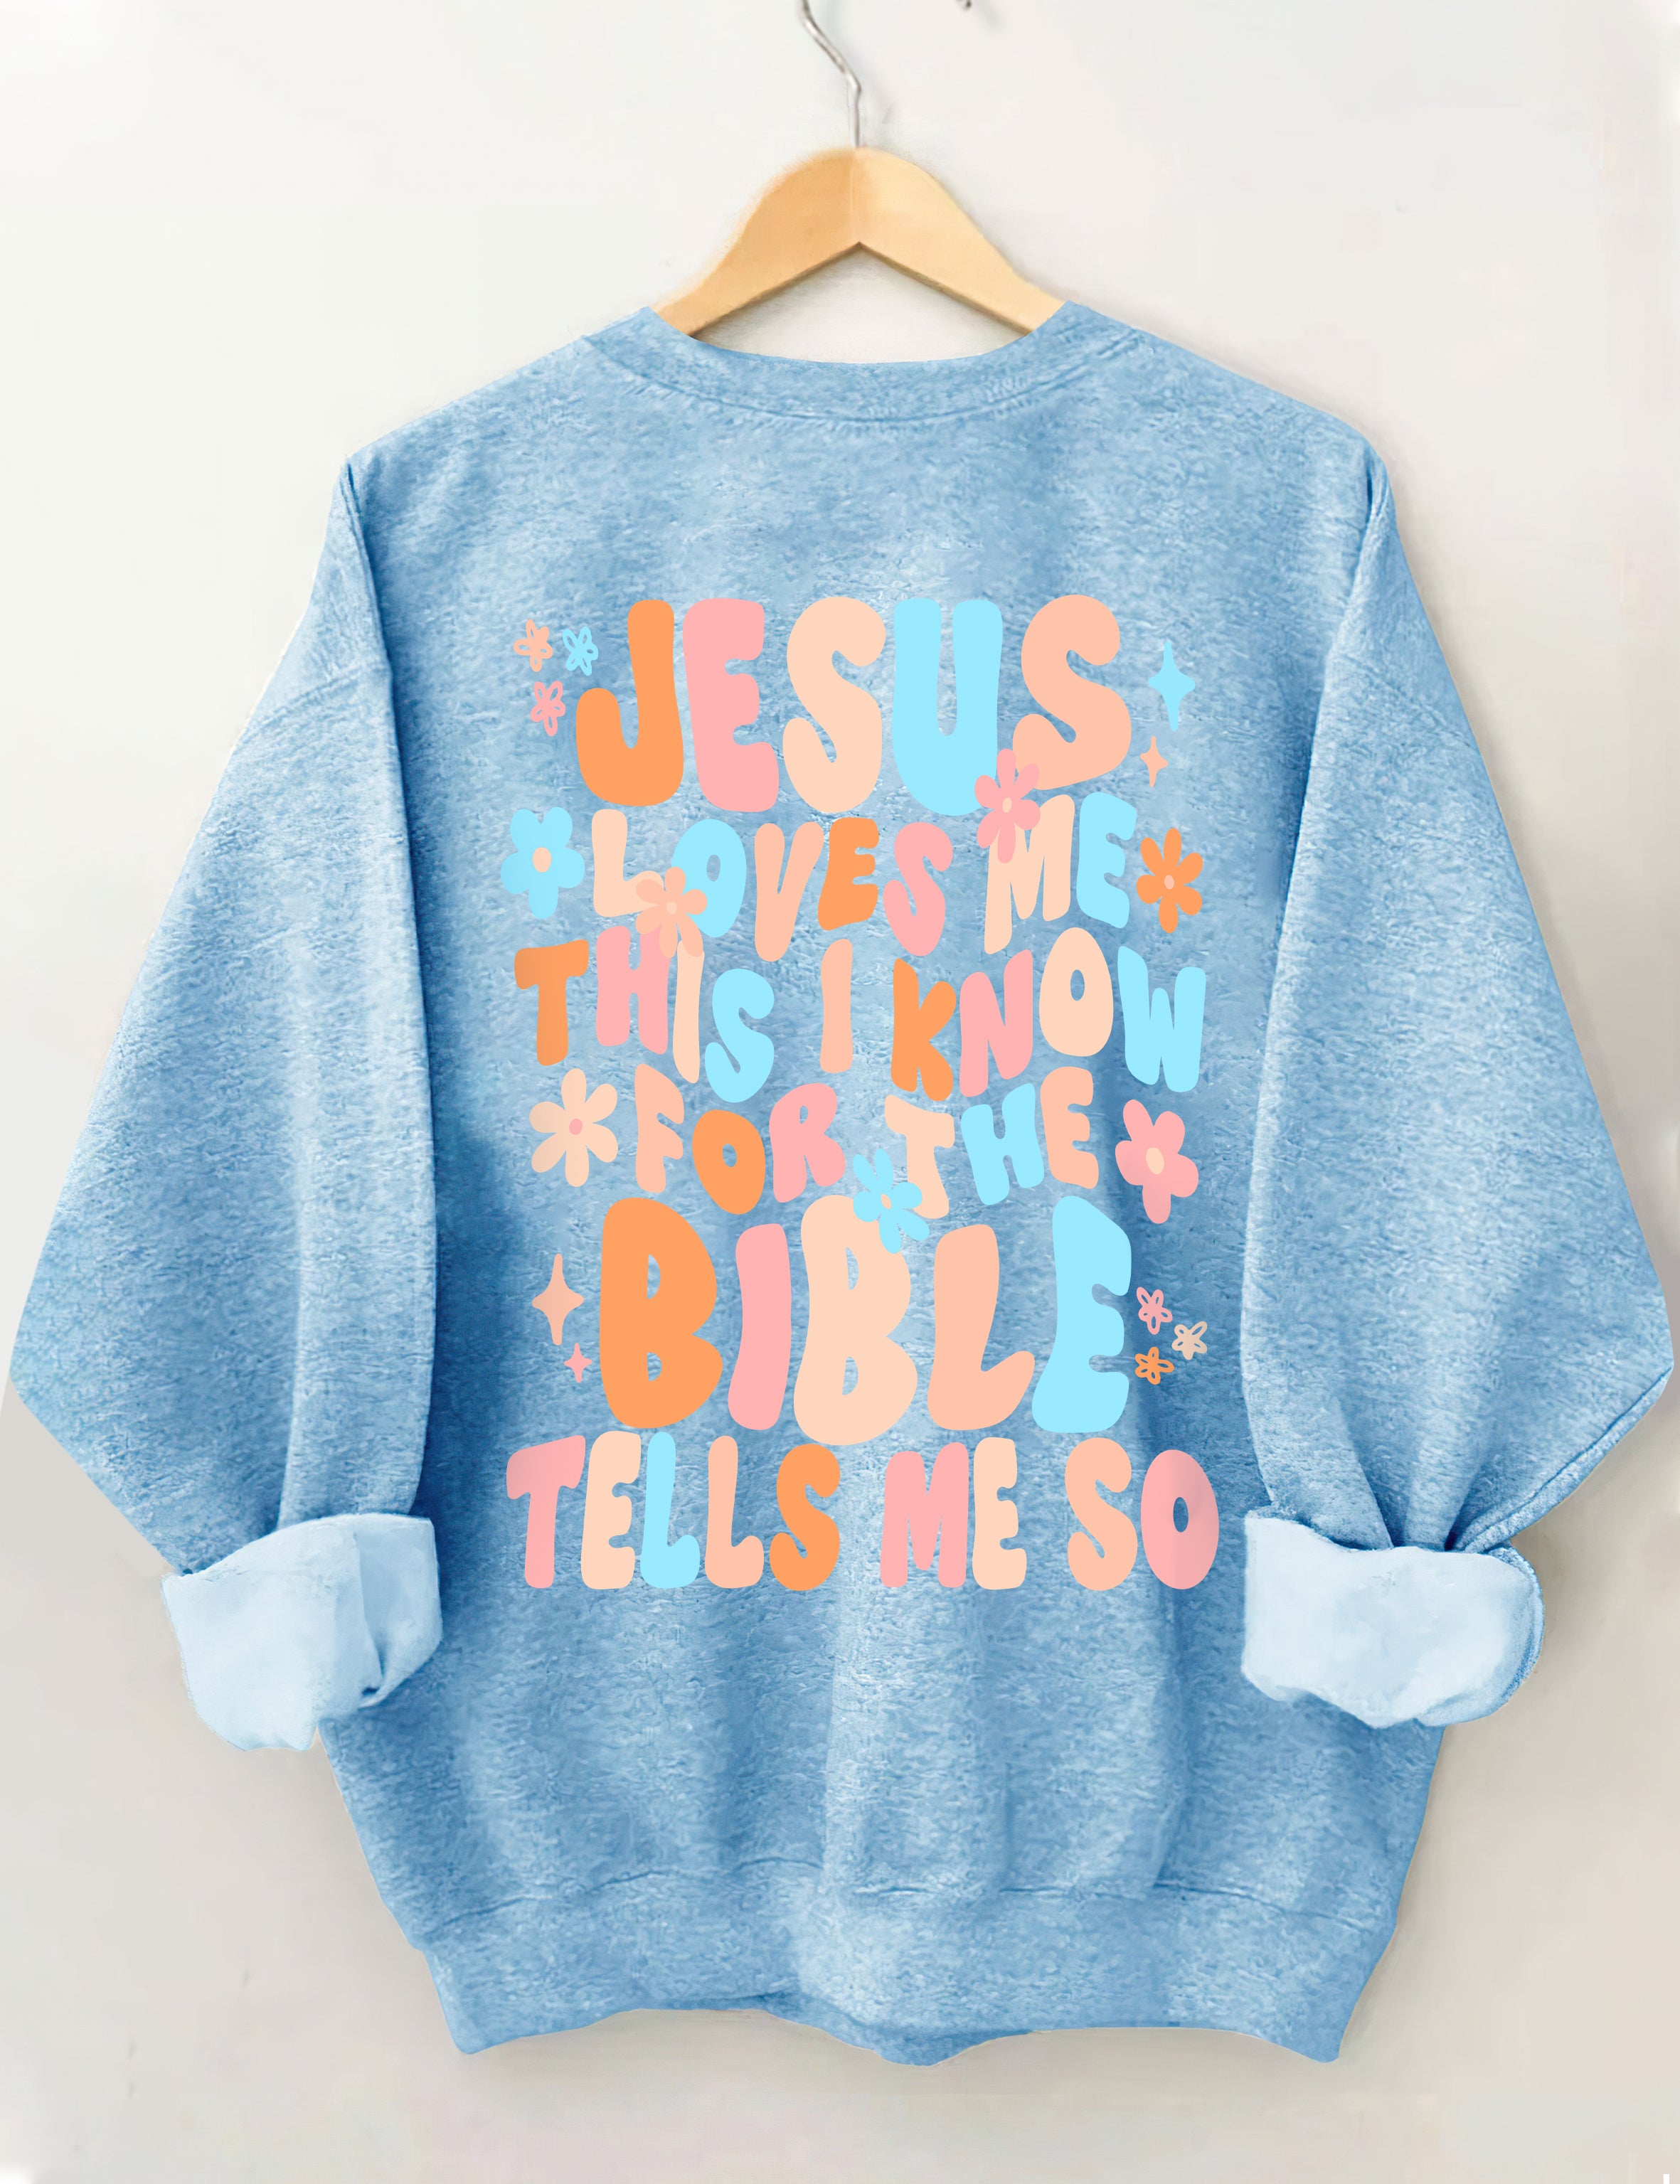 Jesus Loves Me Sweatshirt